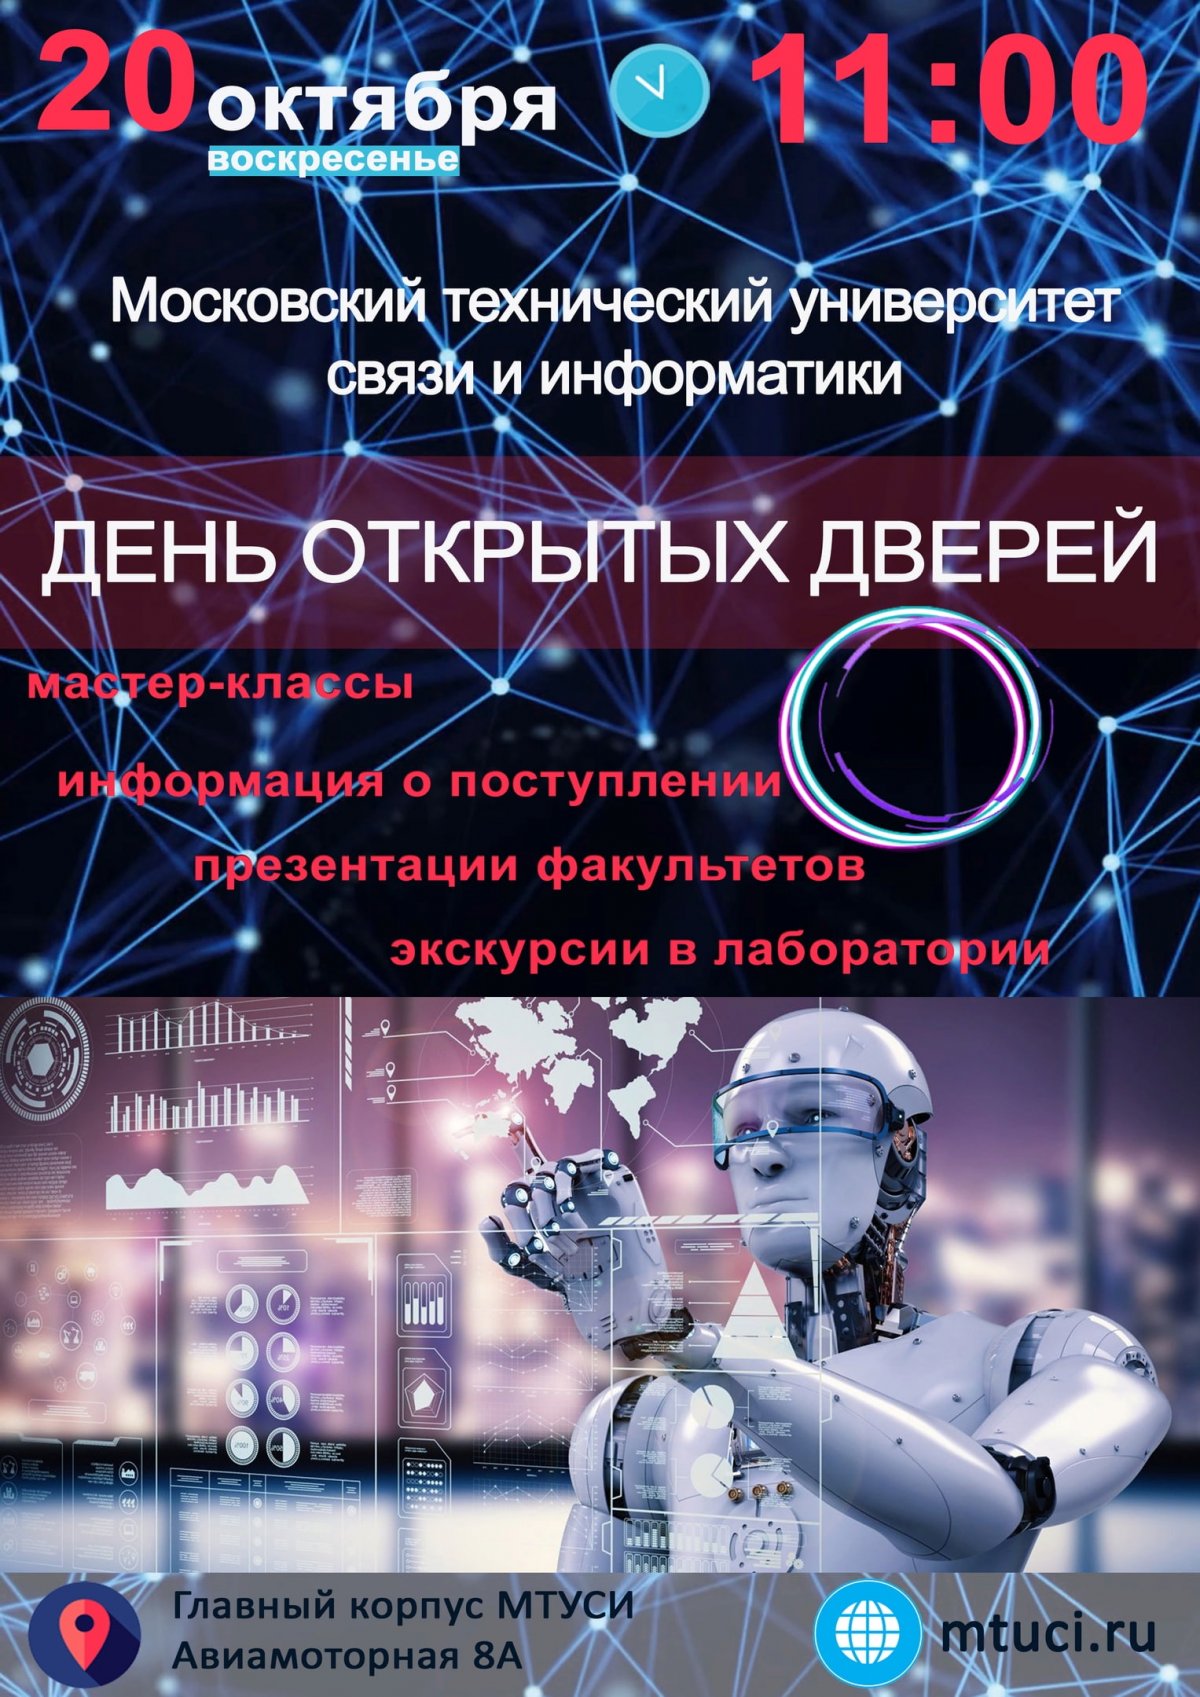 20 октября 2019 года в 11:00 Московский технический университет связи и информатики (МТУСИ) открывает двери будущим абитуриентам, их родителям и друзьям.